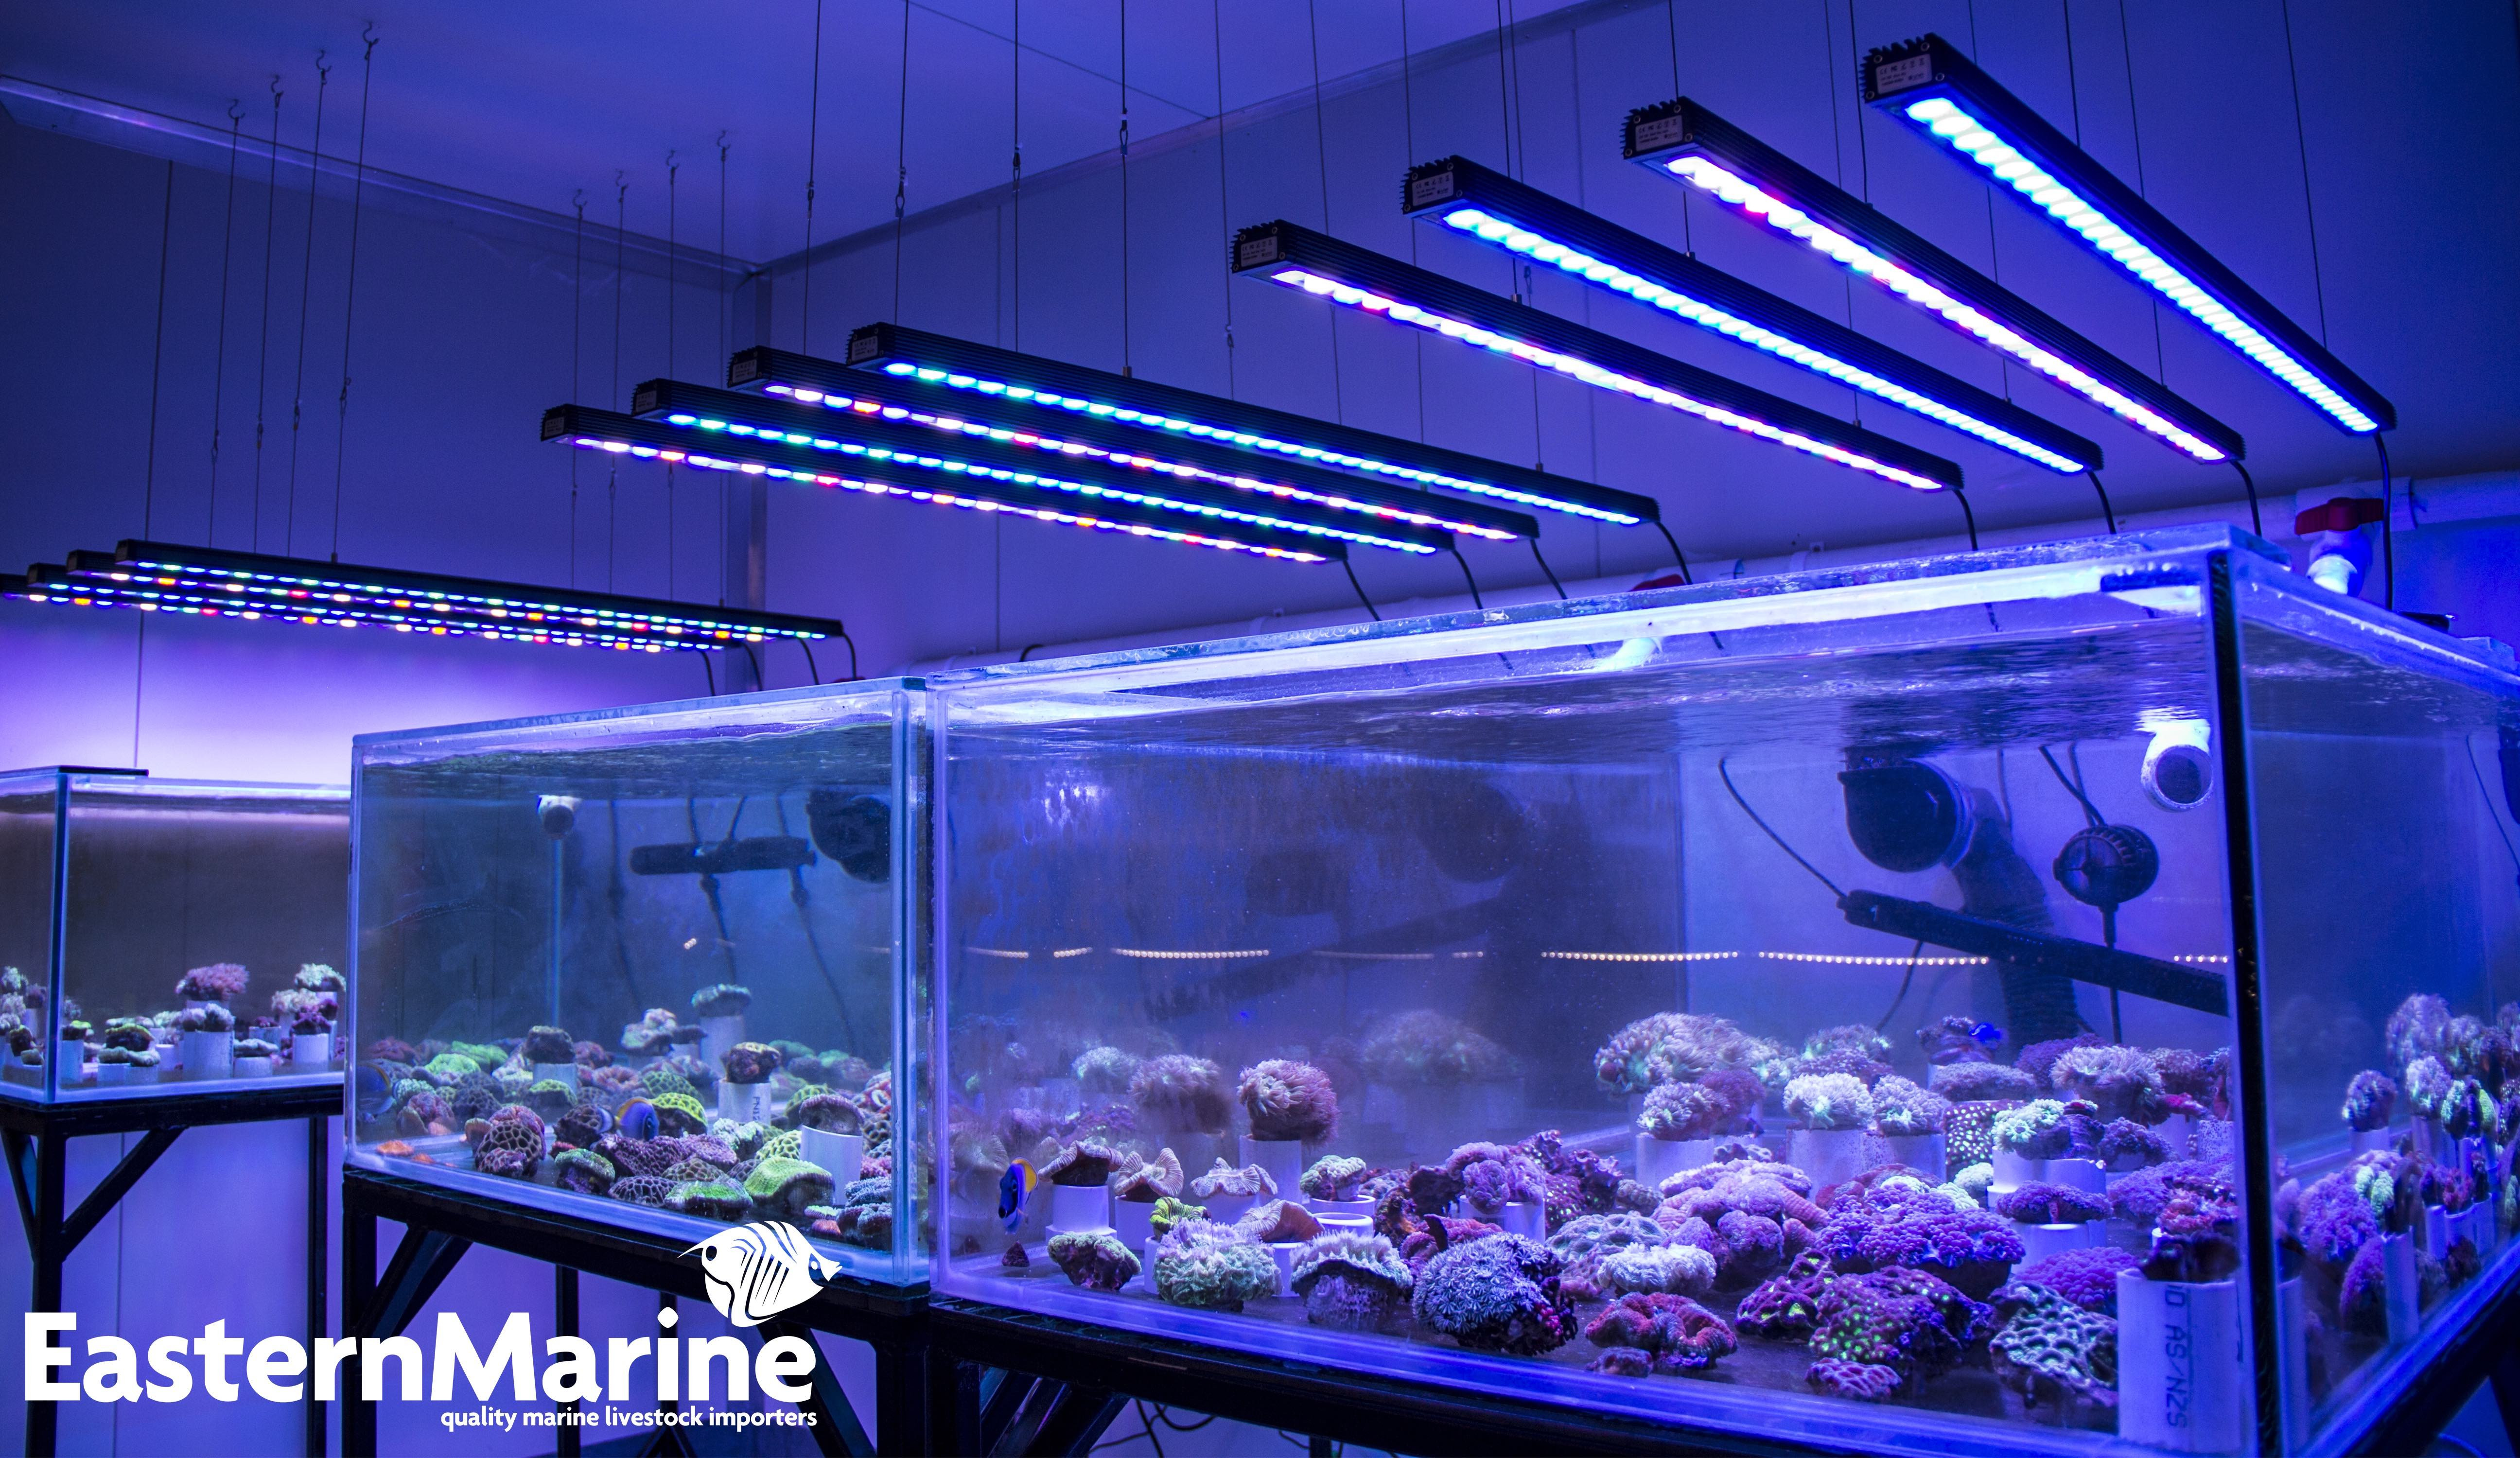 Best ideas about Led Aquarium Light
. Save or Pin OR 120 90 60 BAR LED Lighting • Orphek Aquarium LED Lighting Now.